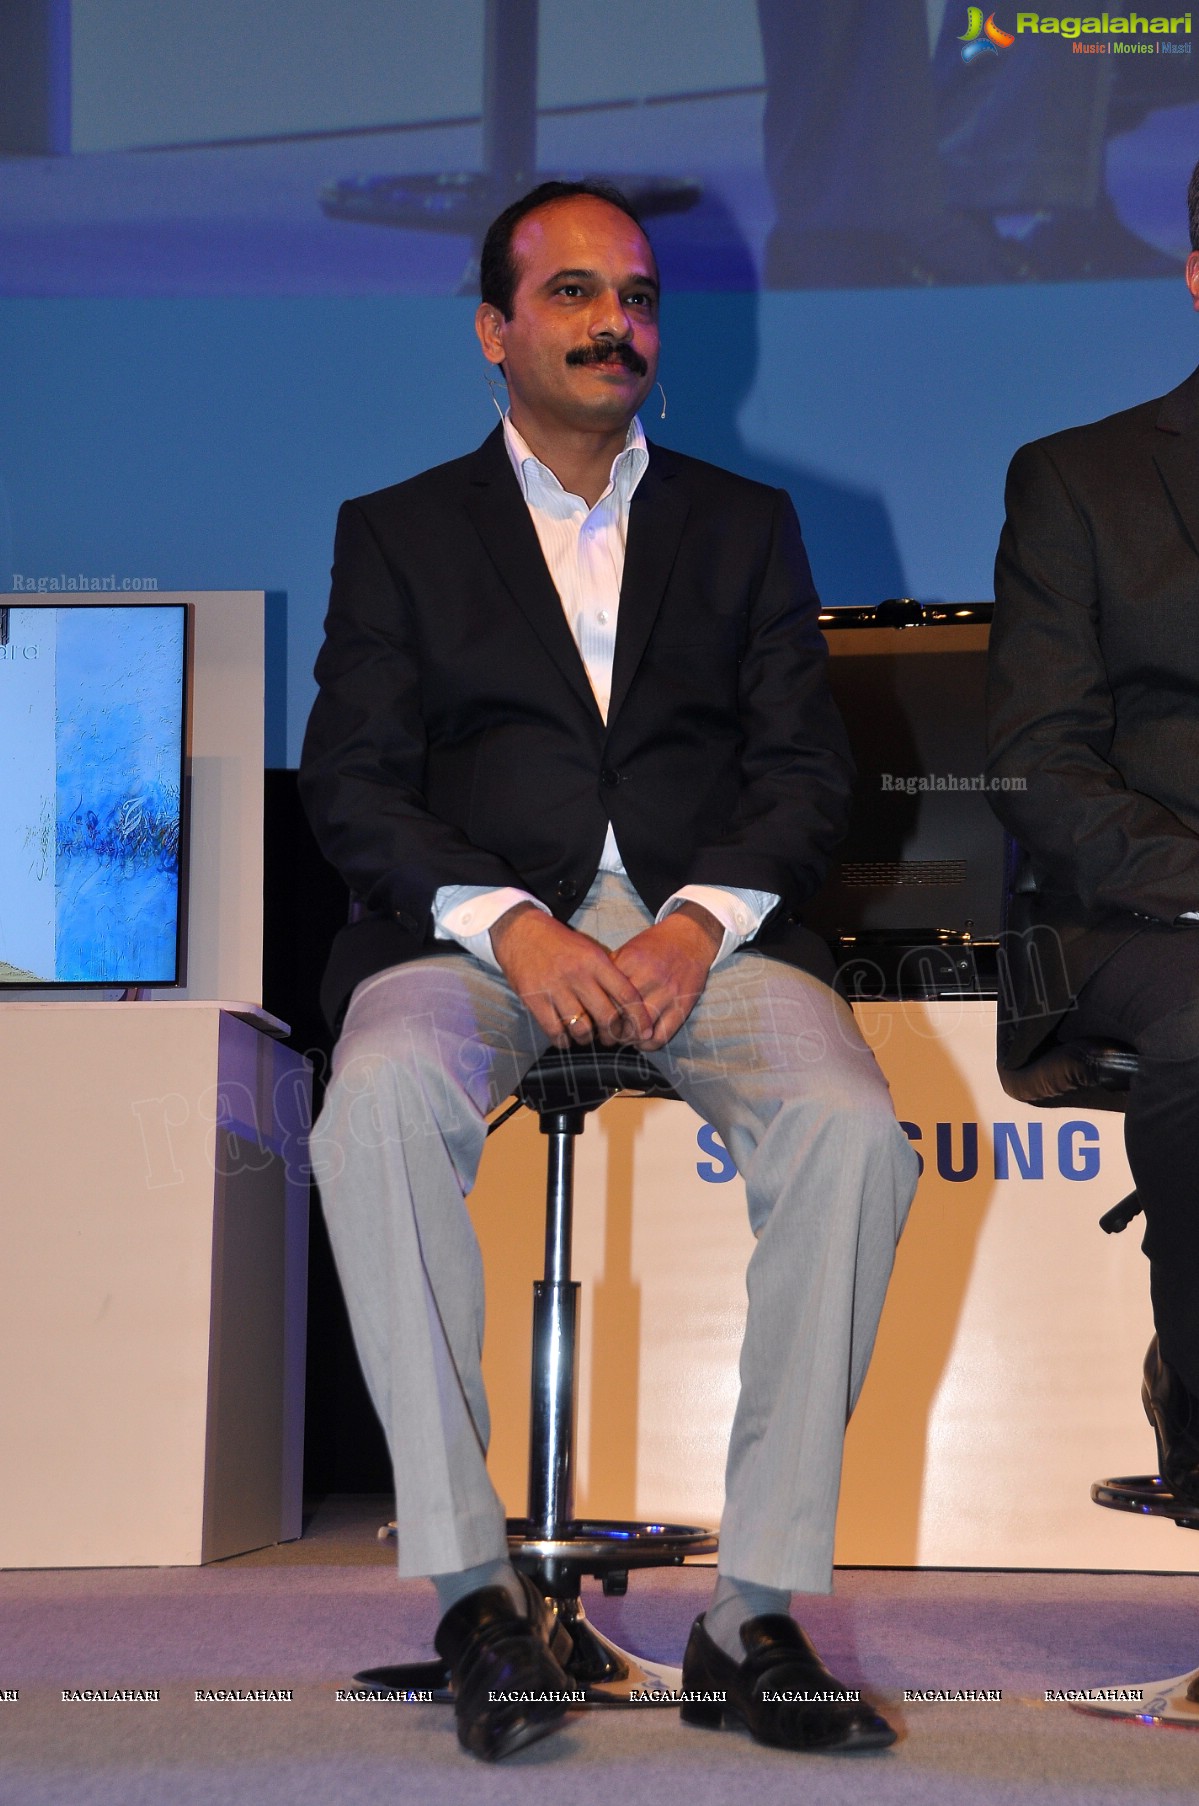 Samsung Third Southwest Asia Forum, Hyderabad